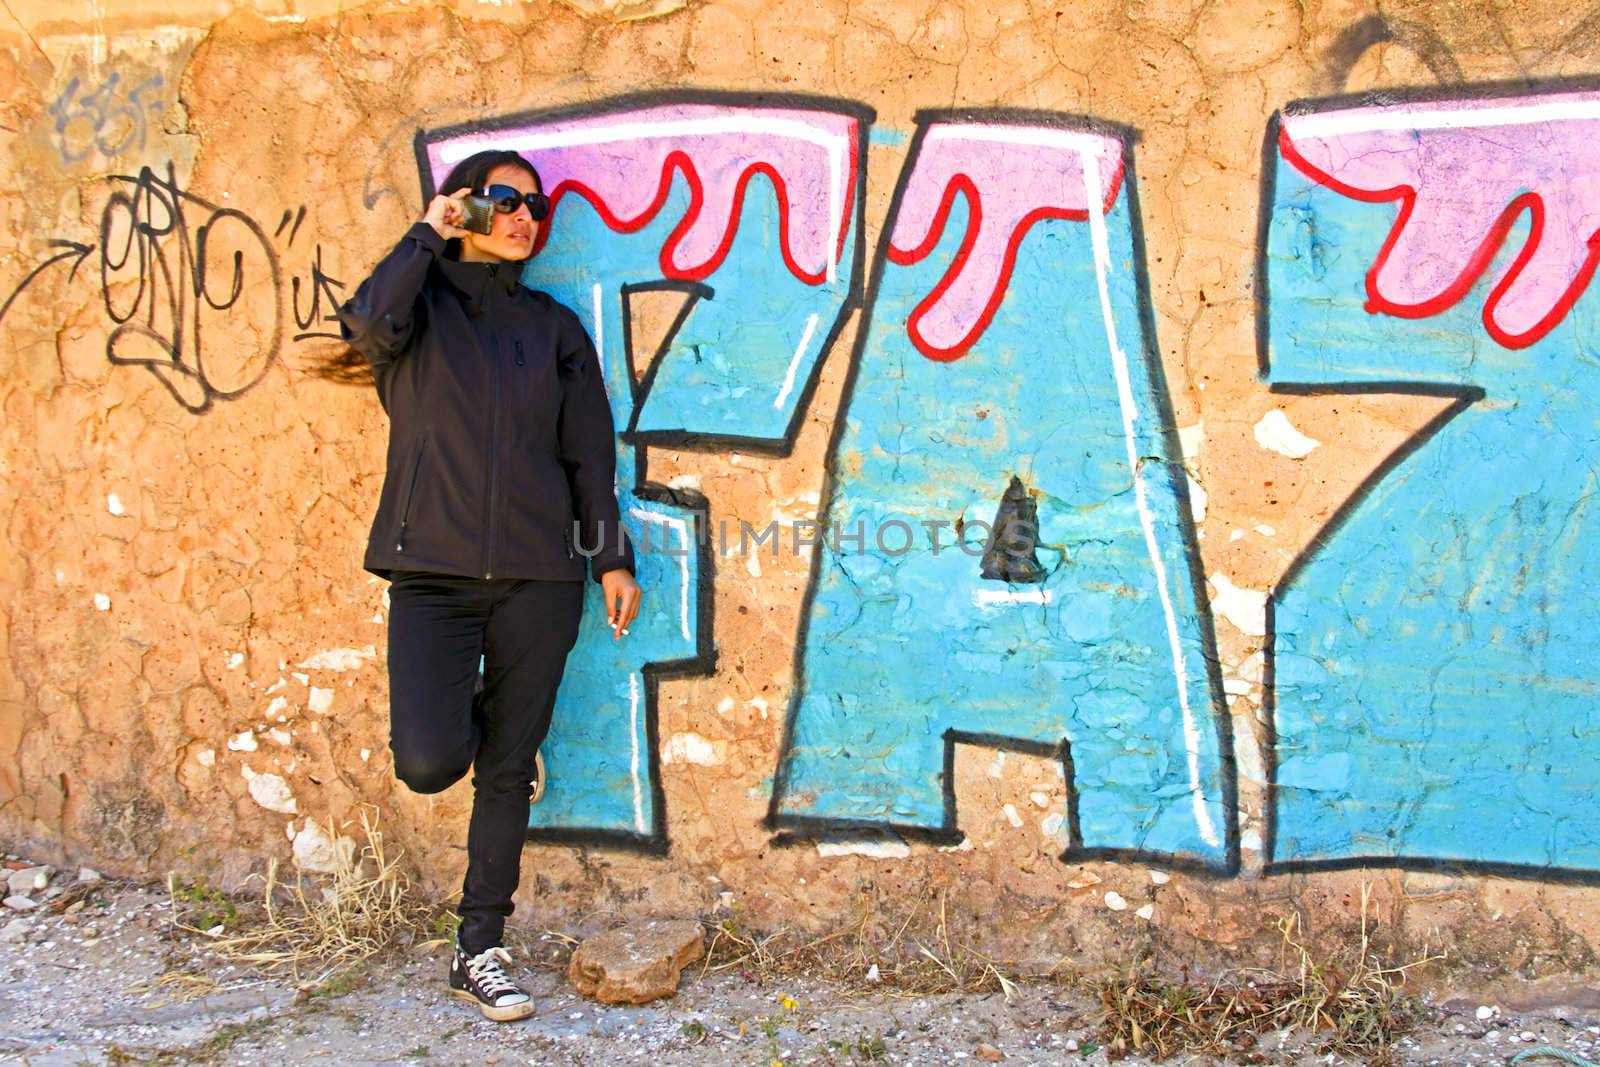 Smoking woman phoning at a graffiti wall by devy